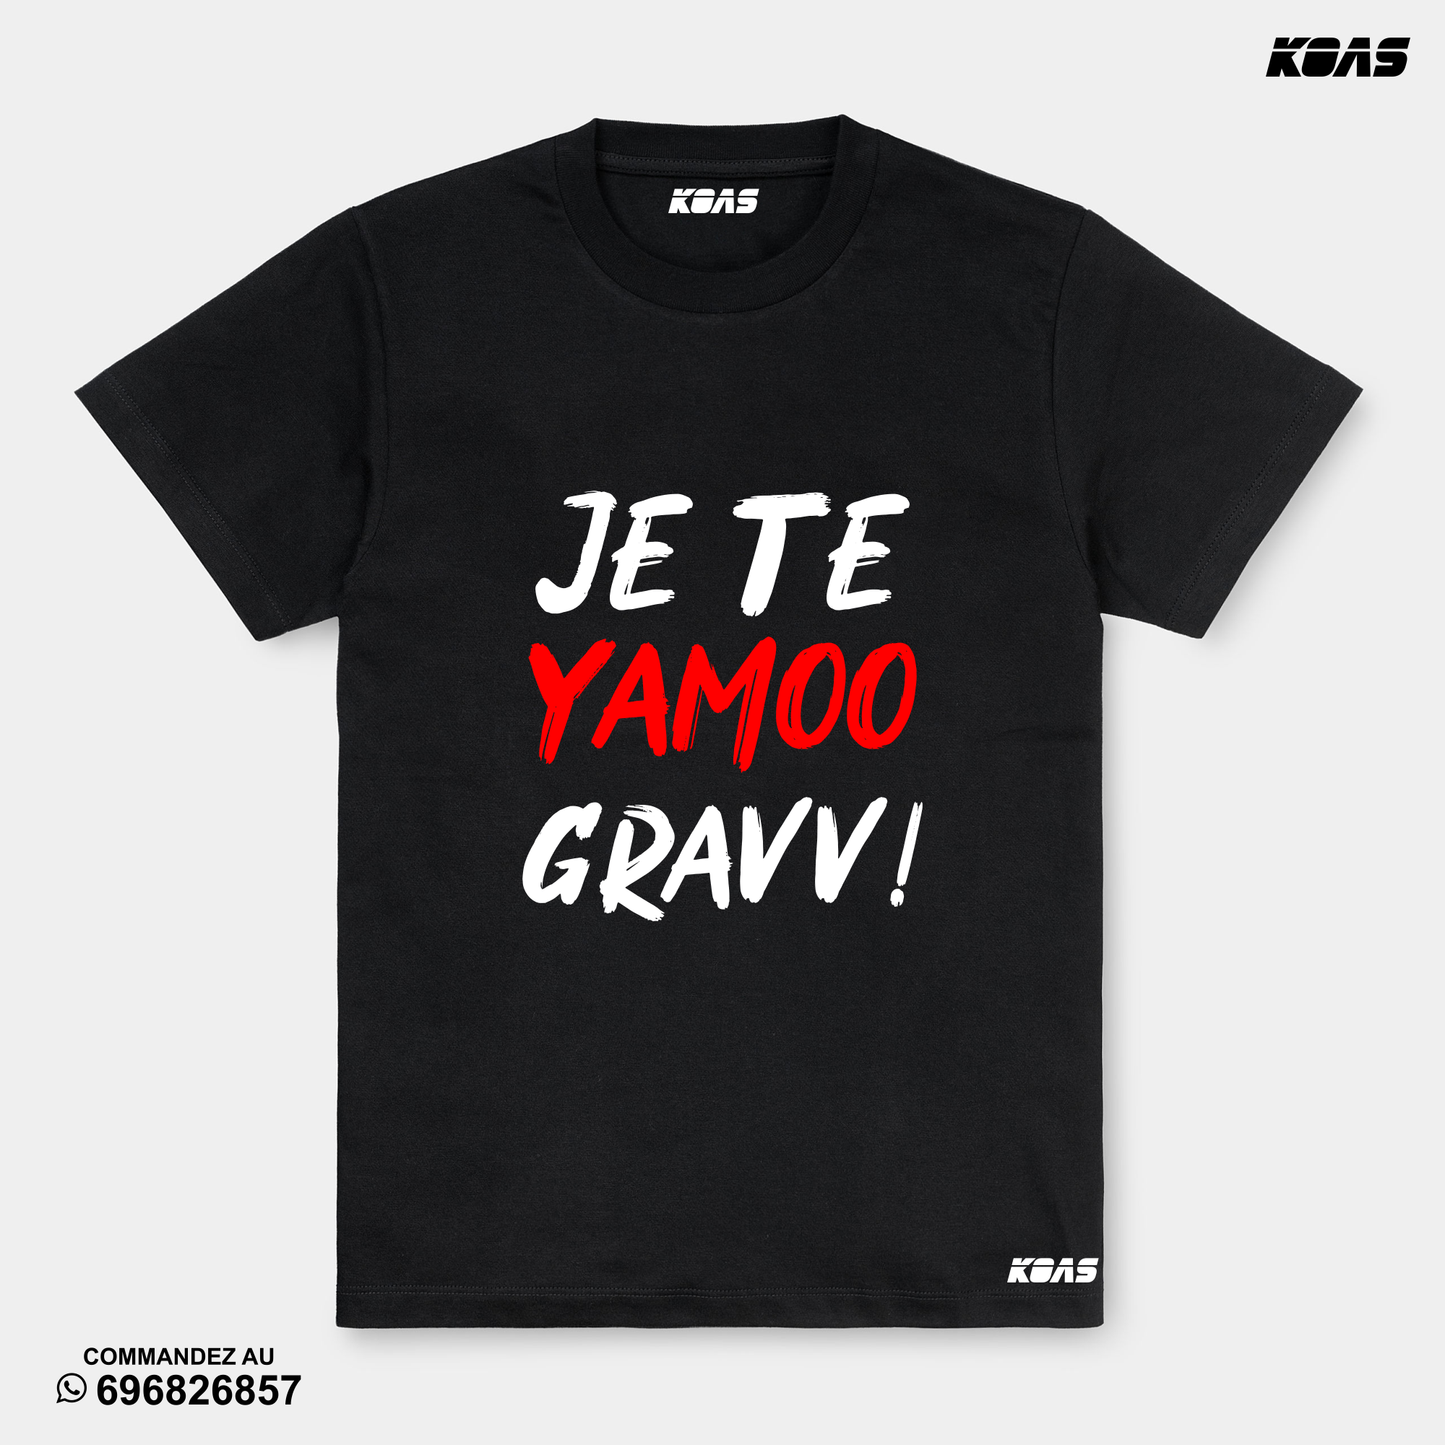 Yamo gravv - Tshirt